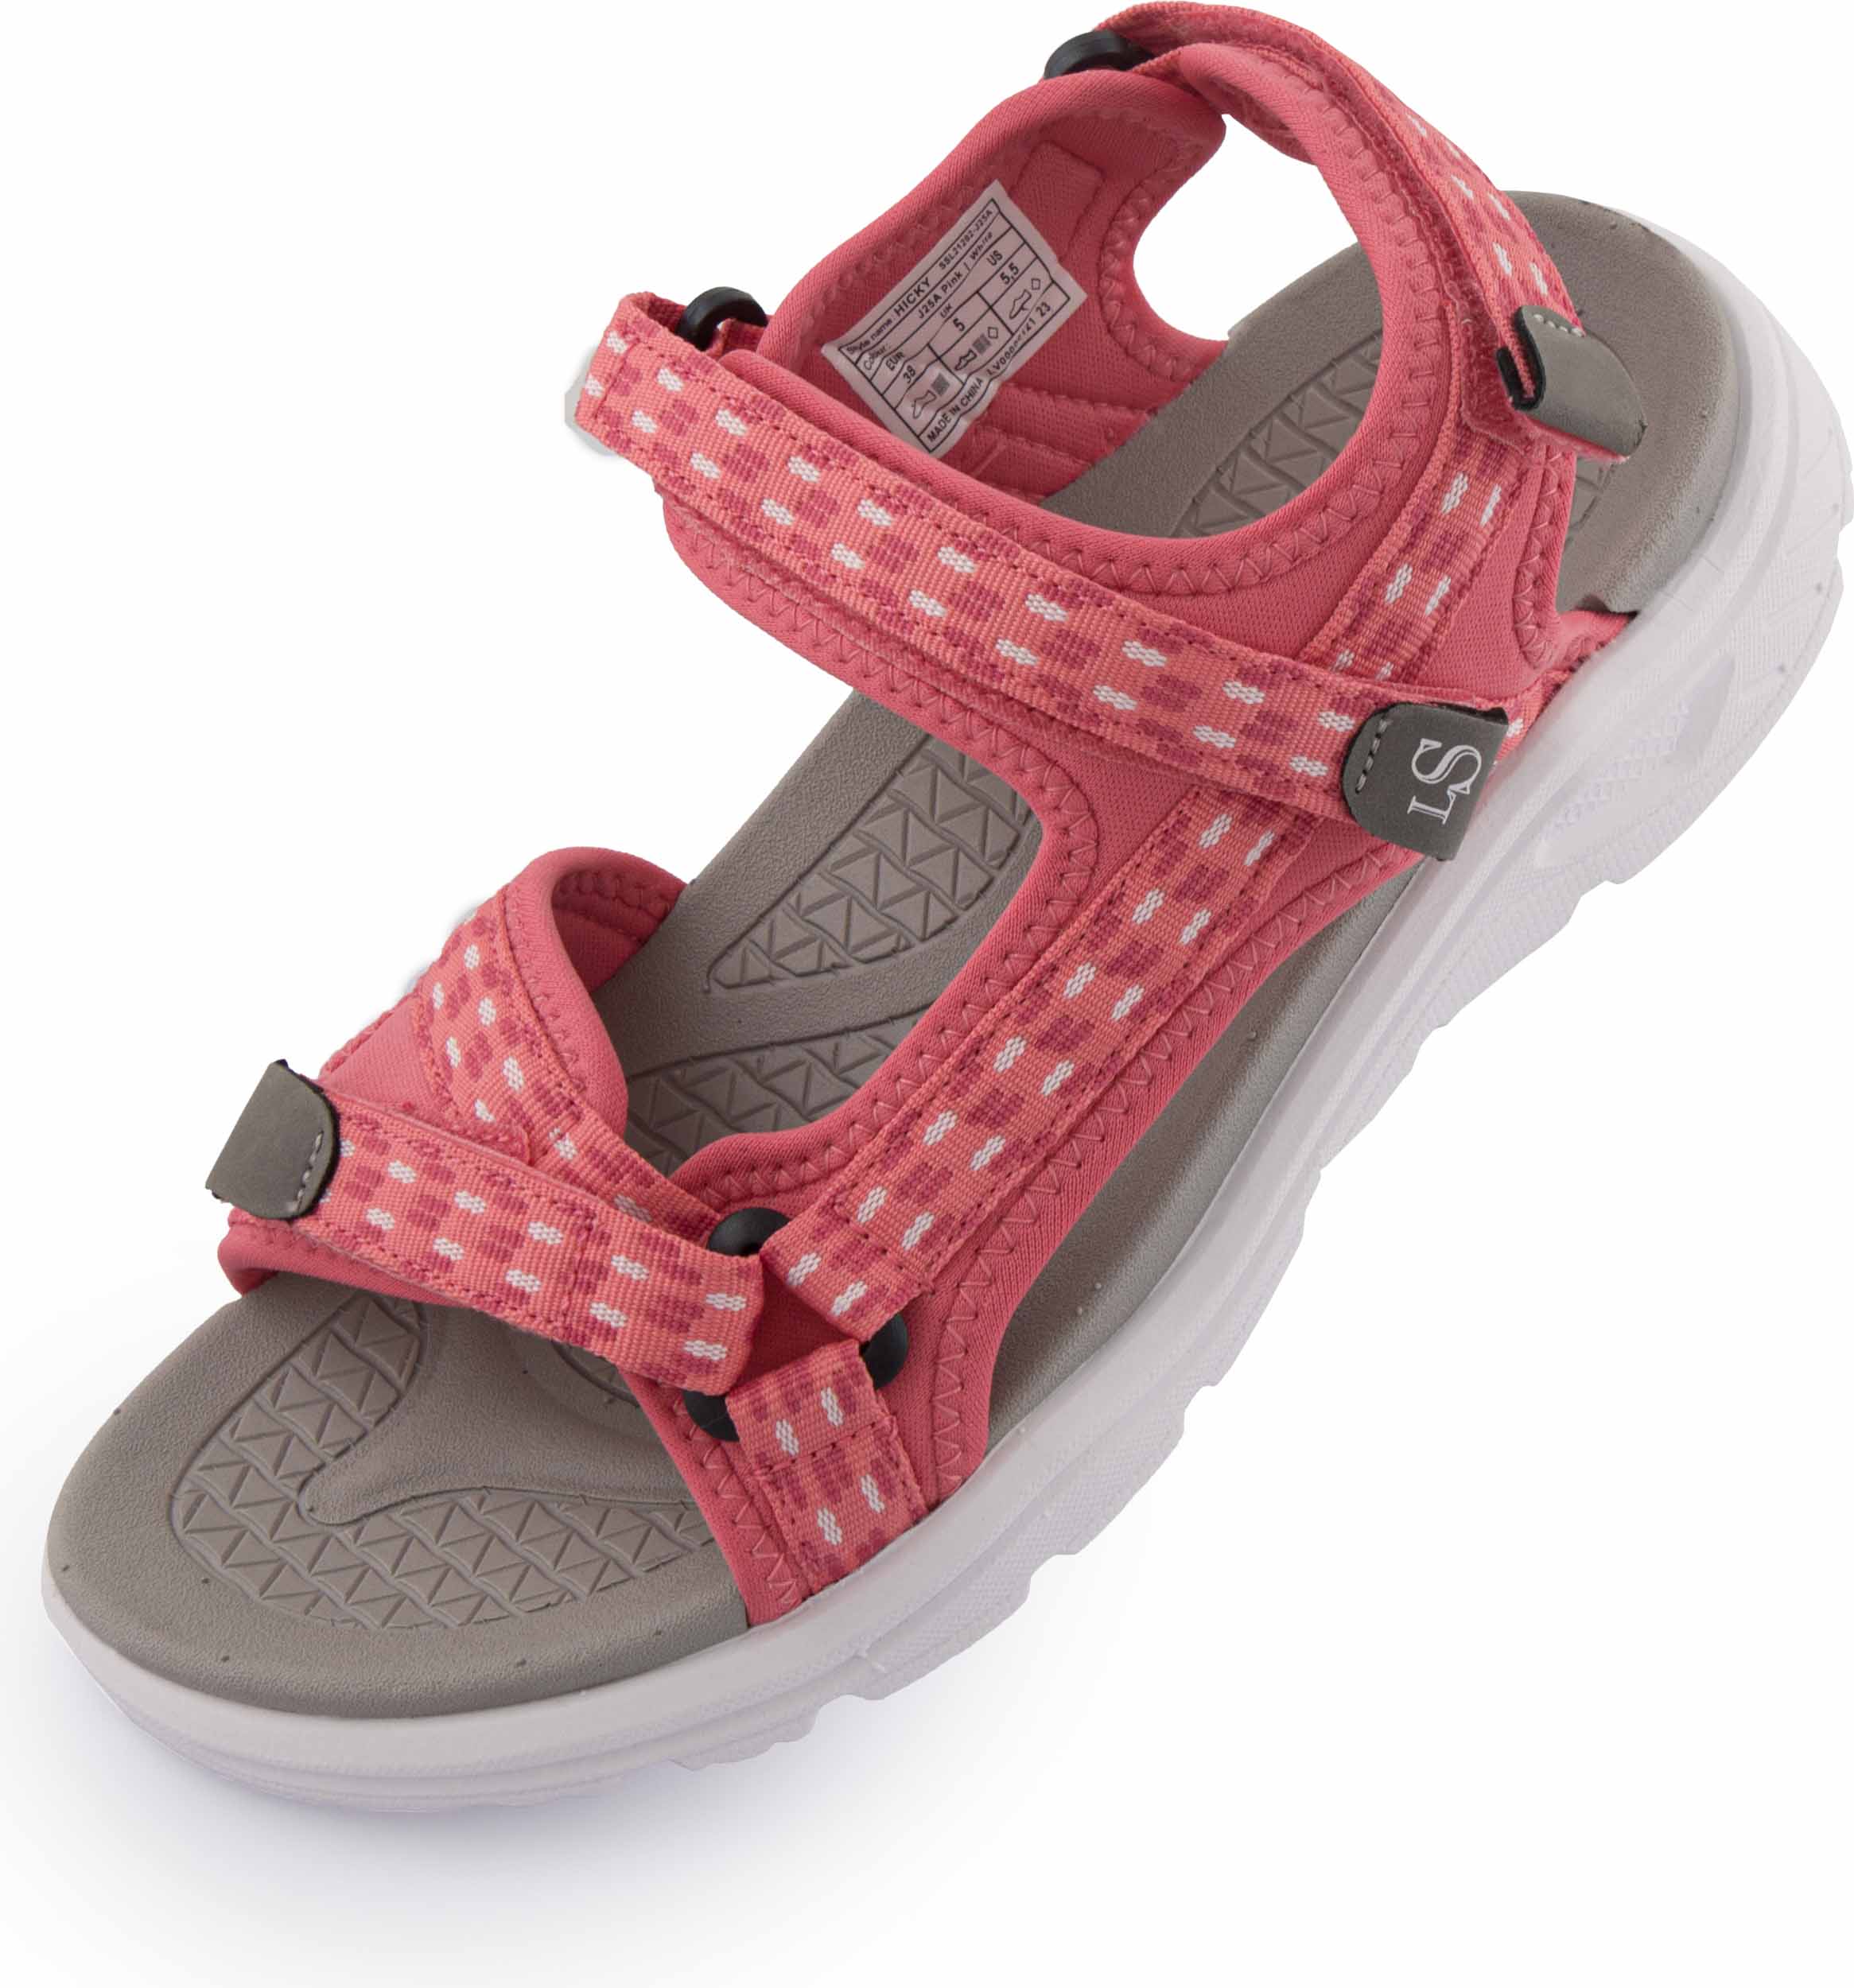 Dámské sandály Loap Hicky pink|39